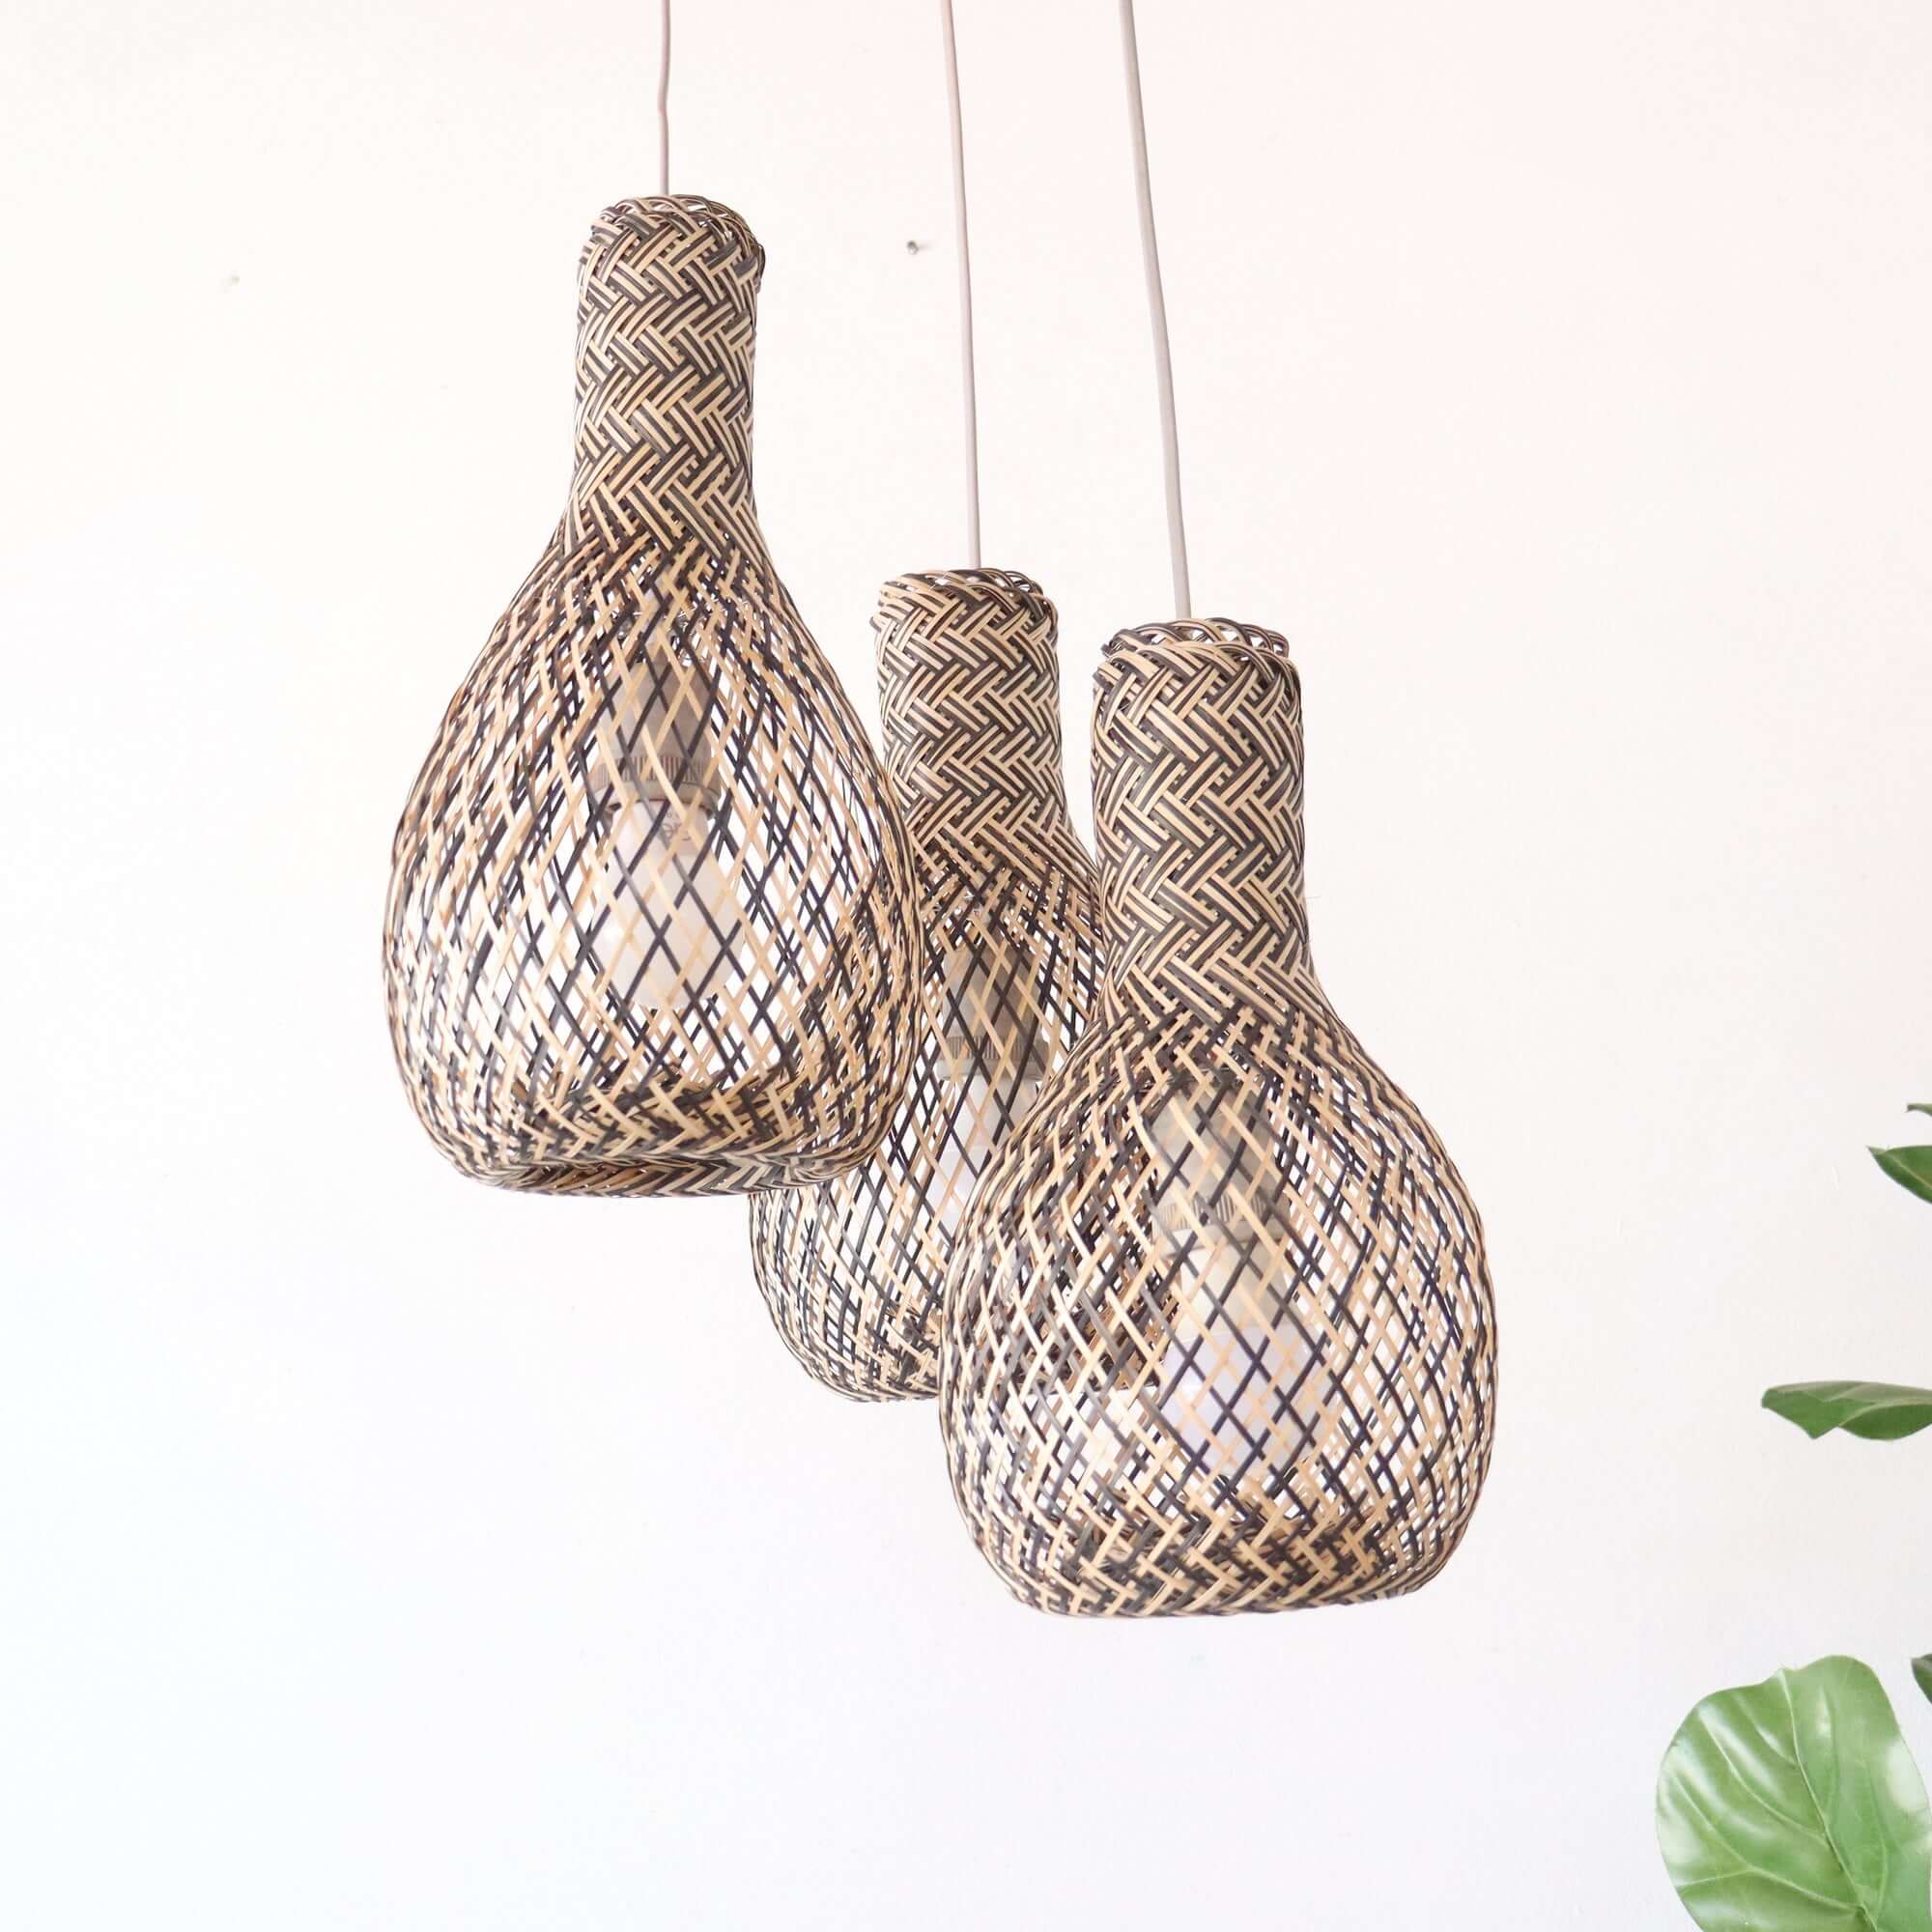 MON RA DA - Bamboo Pendant Light Shade